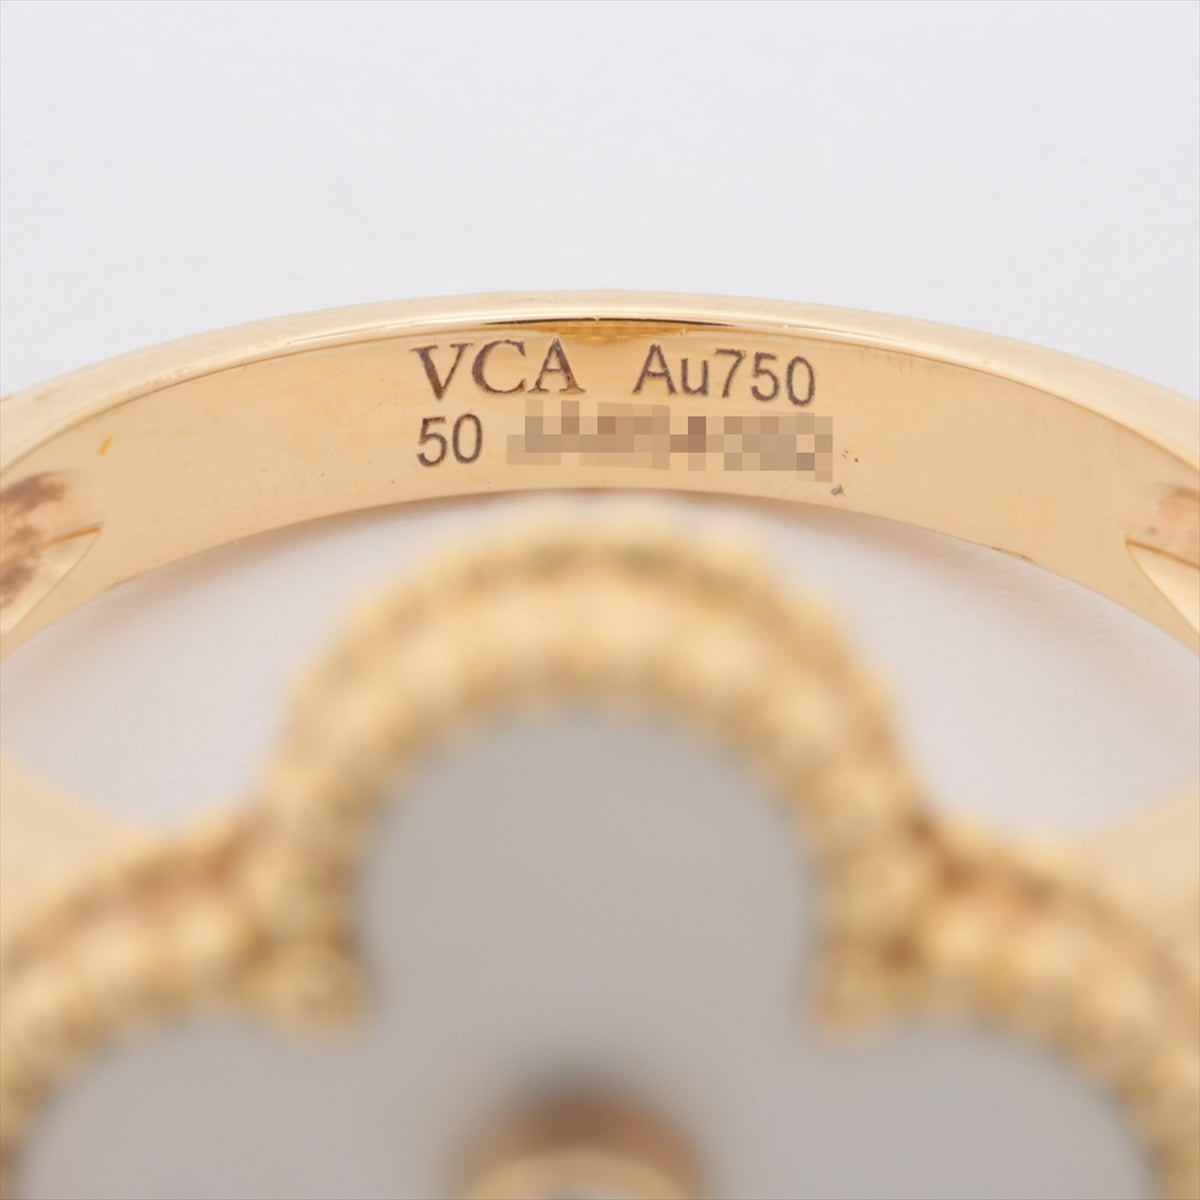 ヴァンクリーフ&アーペル ヴィンテージアルハンブラ シェル ダイヤ リング 750(YG) 6.9g 50 VCARA41150